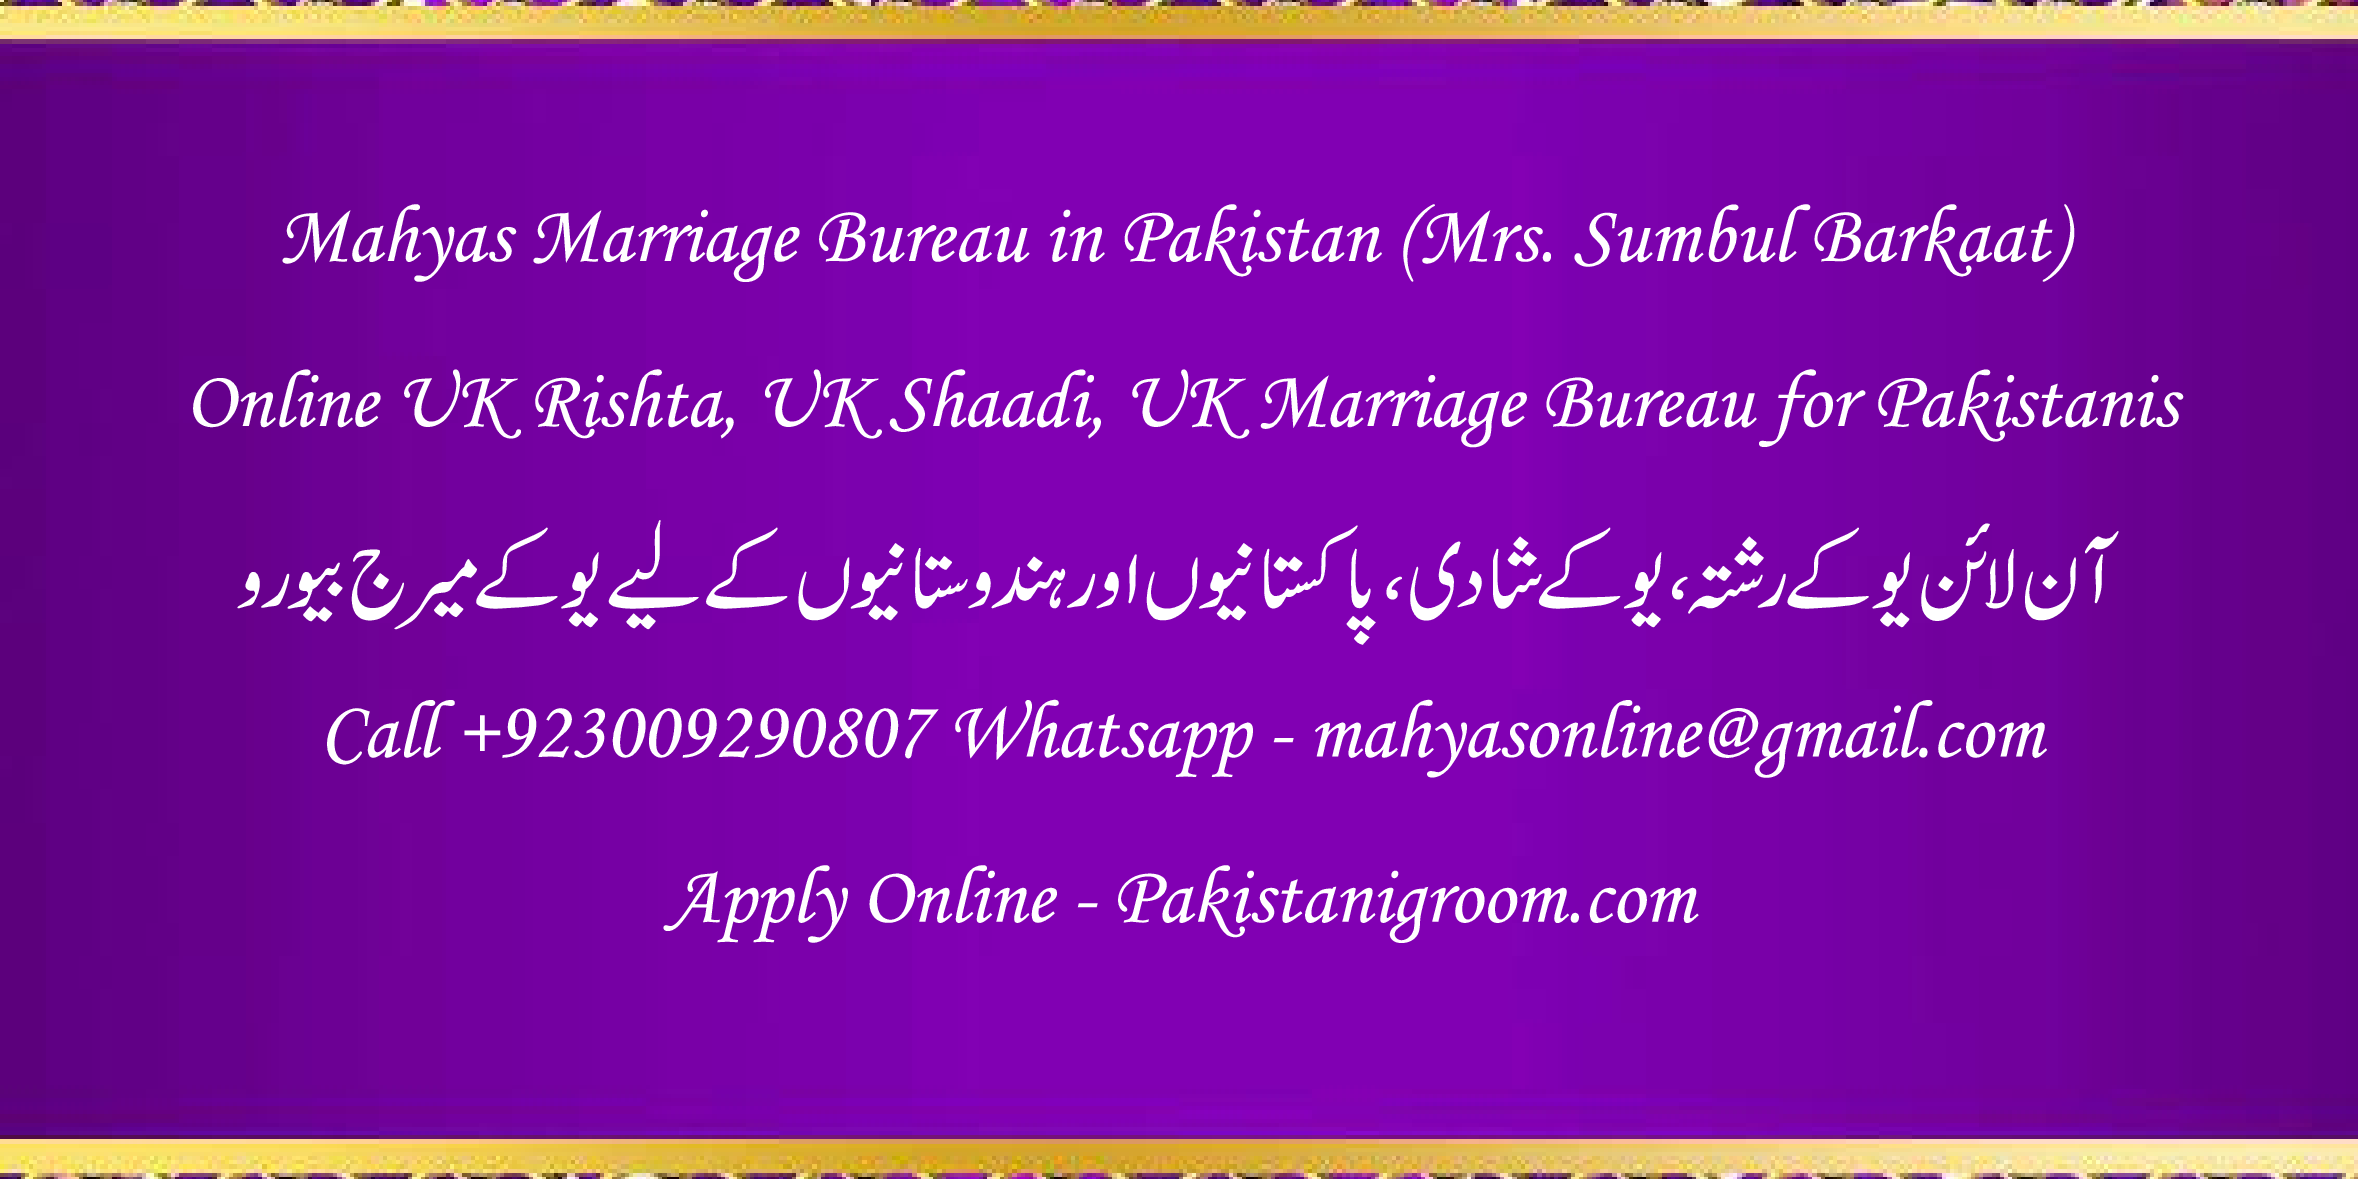 Mahyas-marriage-bureau-Karachi-Pakistan-for-Shia-Sunni-Remarriage-Divorce-Widow-Second-marriage-Punjabi-Pashto-Urdu-19.png